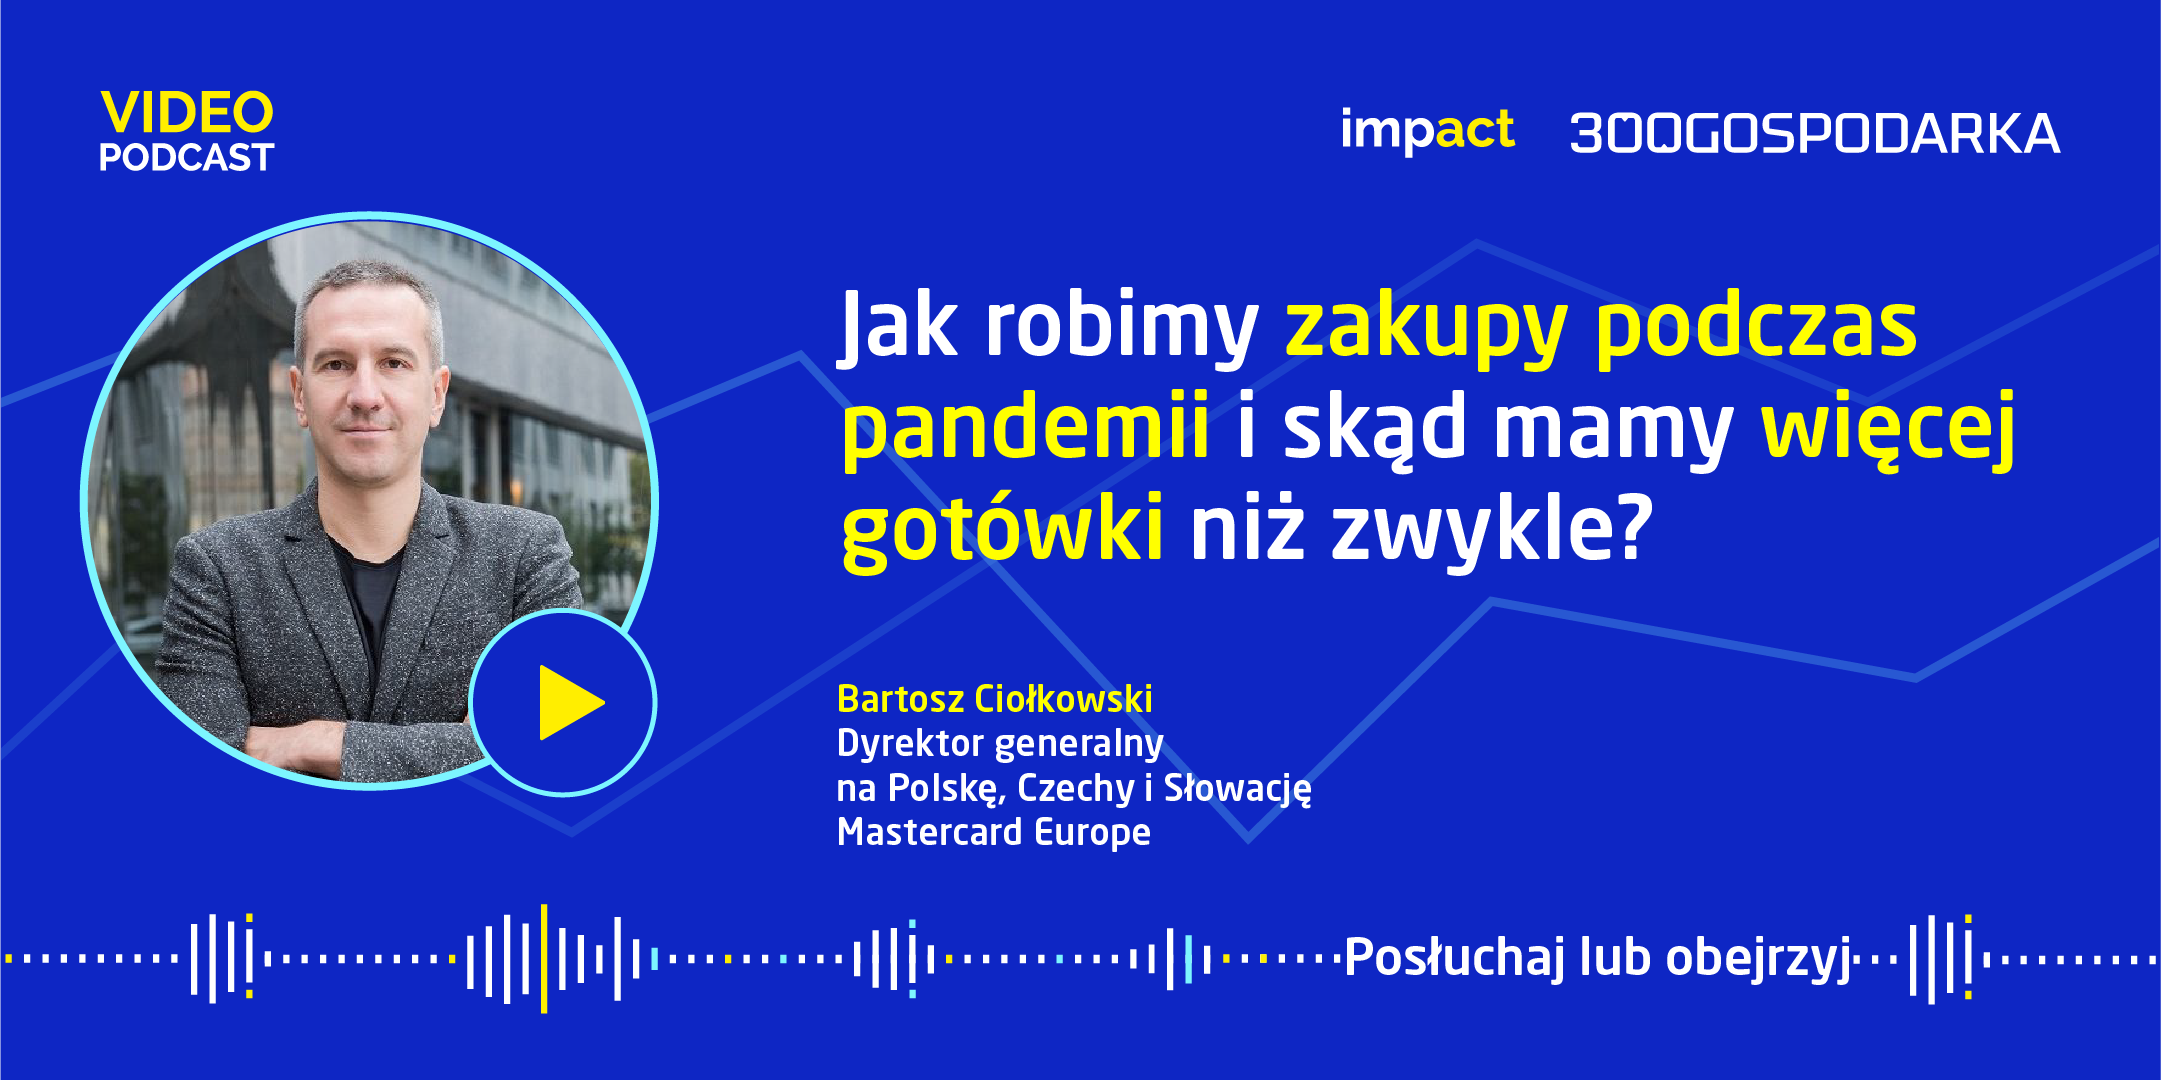 Wywiad: Bartosz Ciołkowski, Mastercard